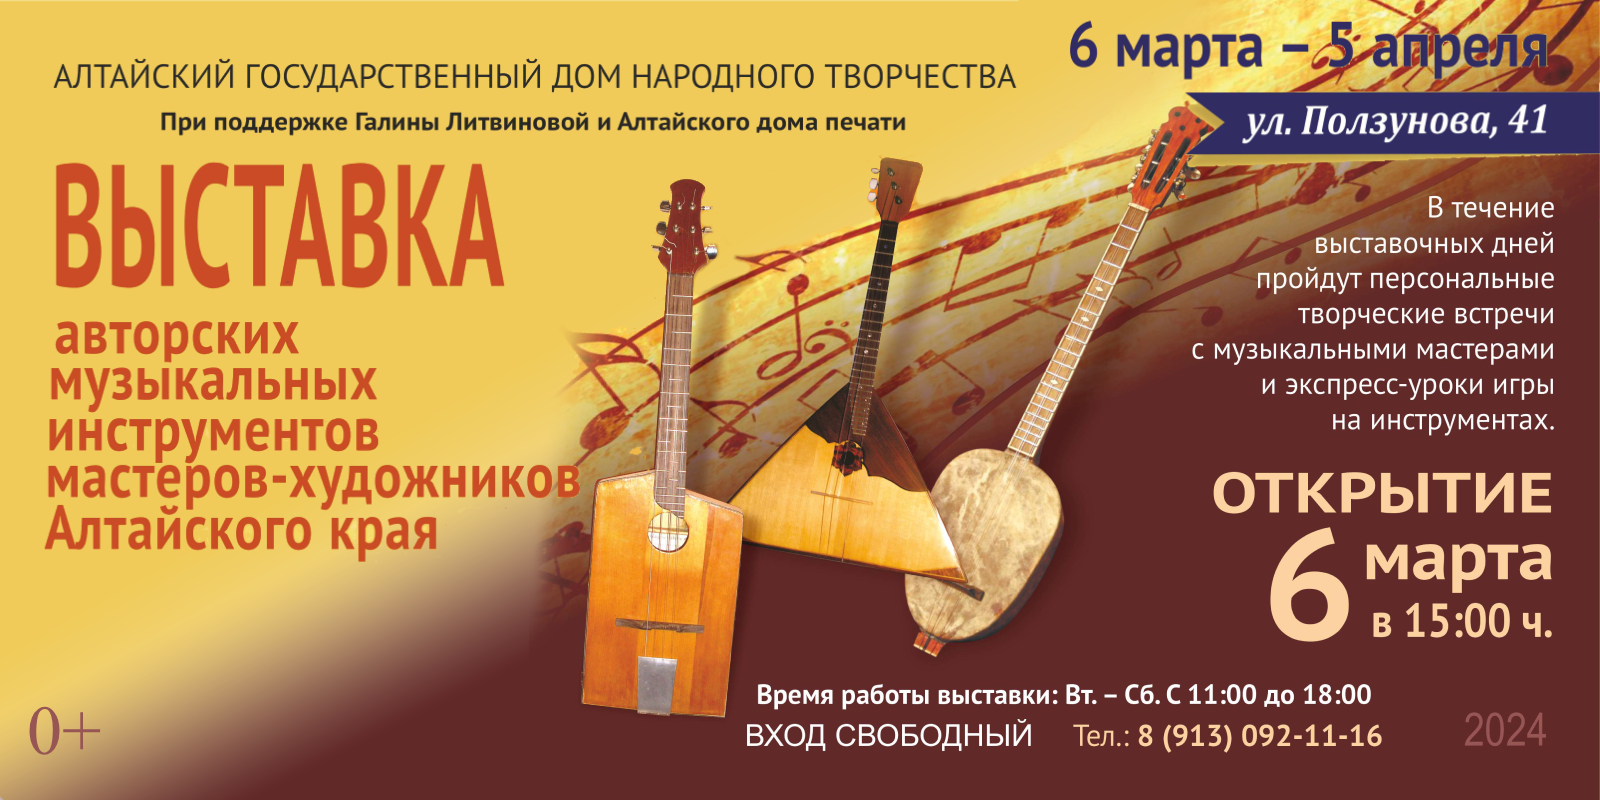 6 марта  Алтайском государственном Доме народного творчества состоится открытие выставки